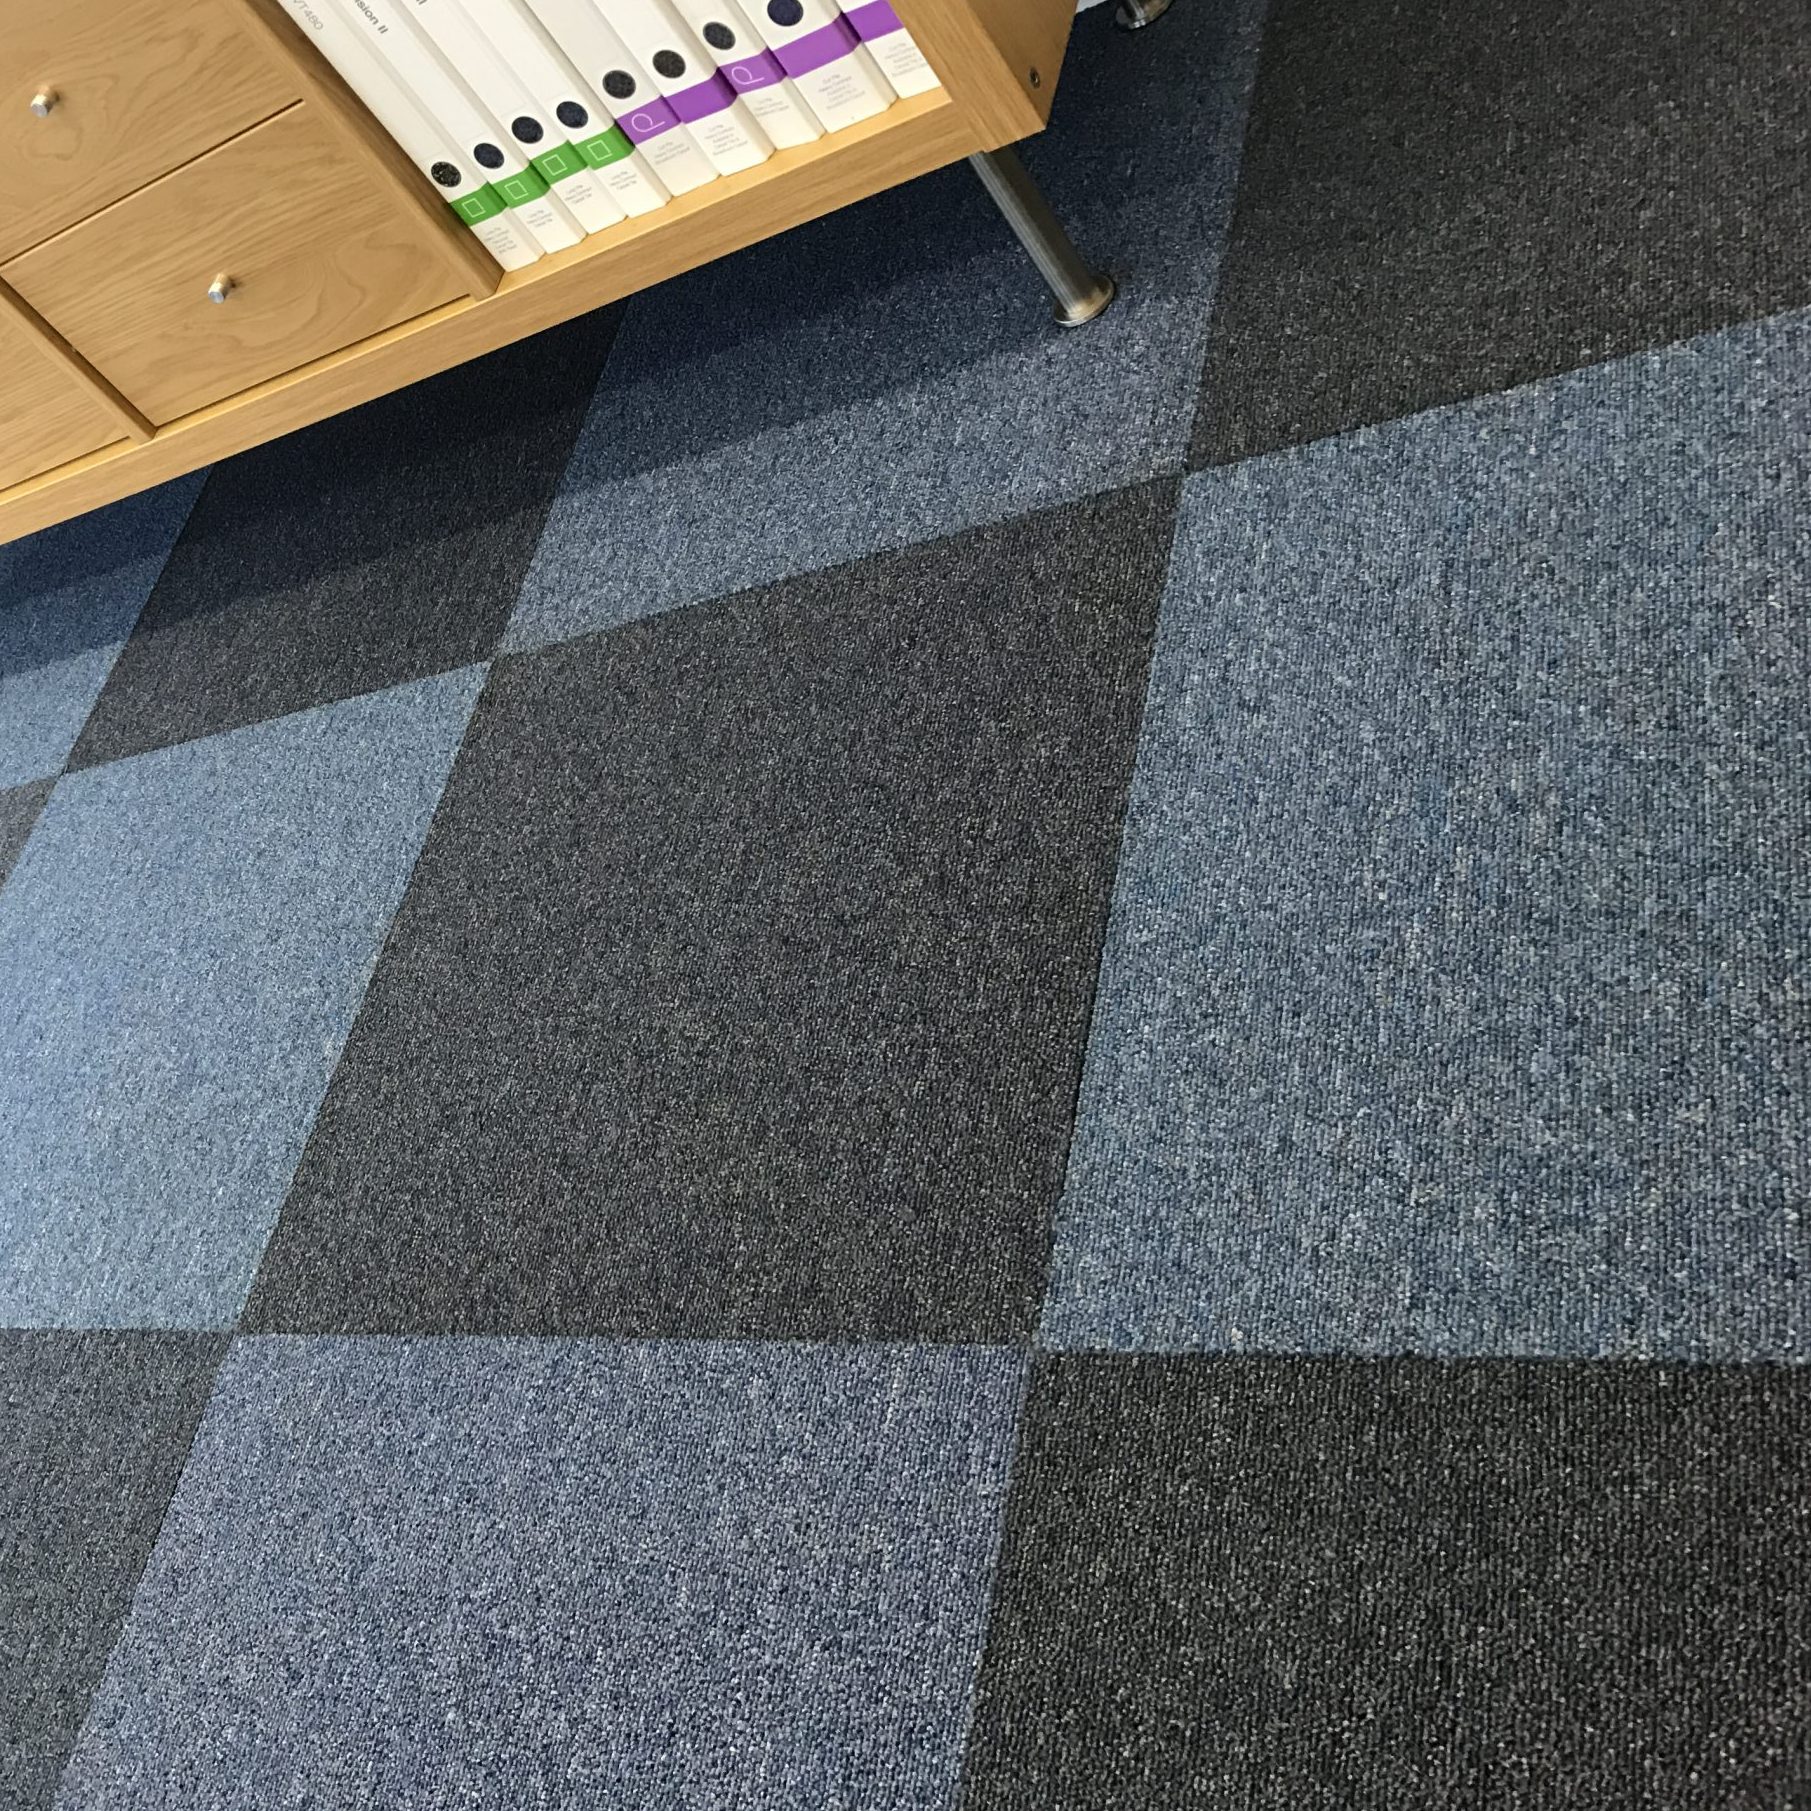 Sigma Loop Pile Carpet Tiles Commercial Carpet Tiles That Carpet Tile Company Ltd Online Flooring Distributors